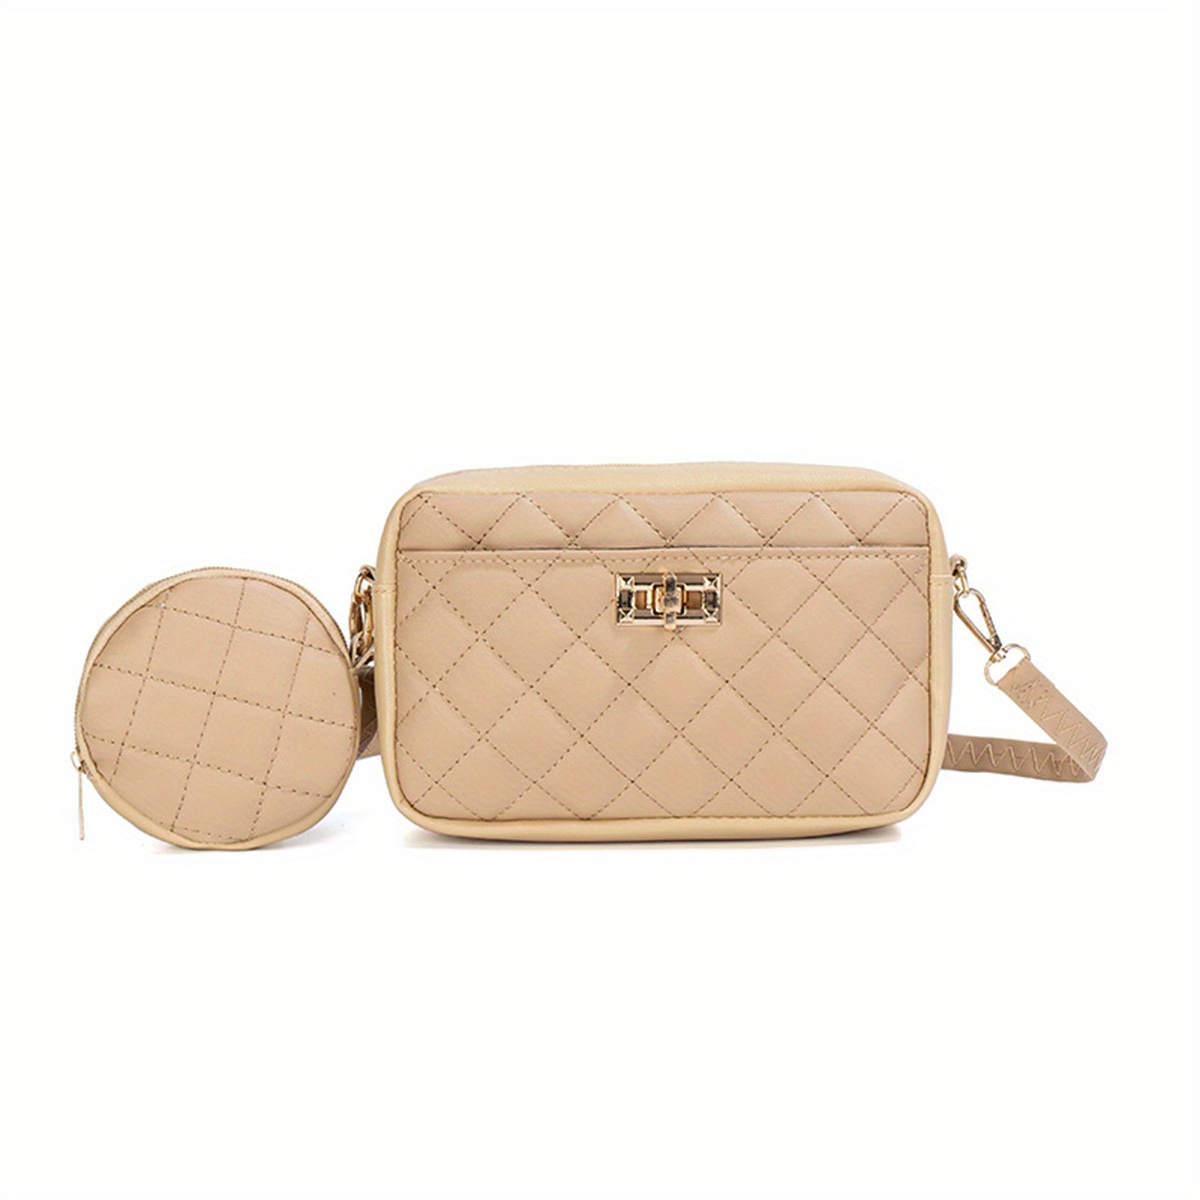 ‘Together’ shoulder bag and coin purse set